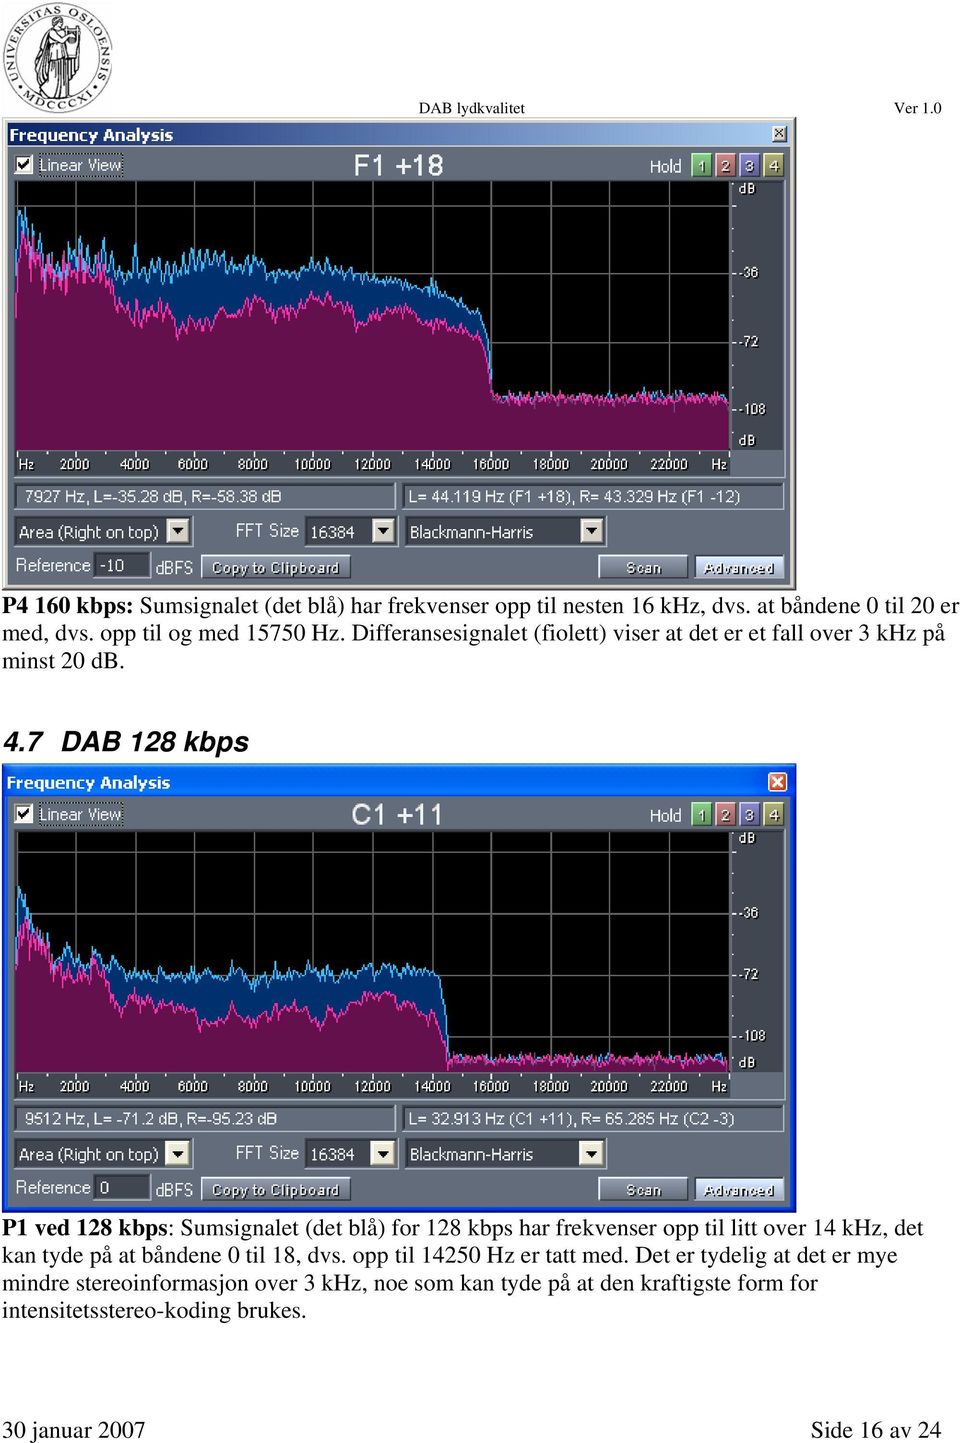 7 DAB 128 kbps P1 ved 128 kbps: Sumsignalet (det blå) for 128 kbps har frekvenser opp til litt over 14 khz, det kan tyde på at båndene 0 til